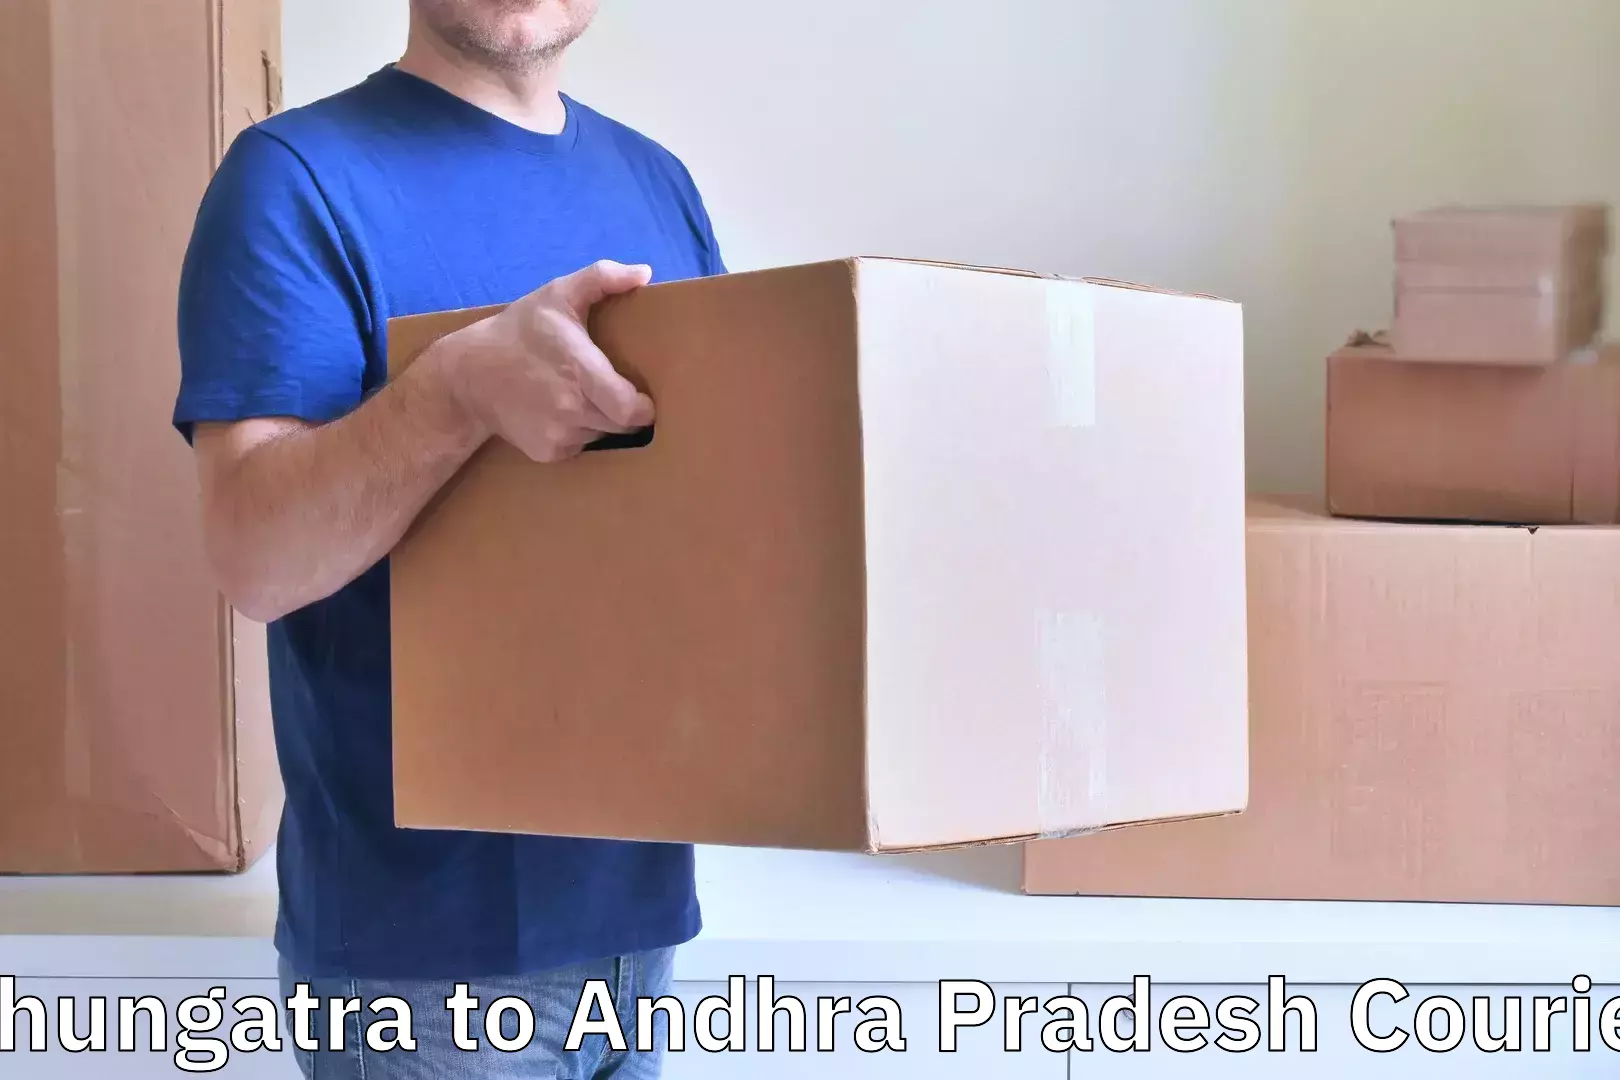 Festival baggage courier Chungatra to Andhra Pradesh